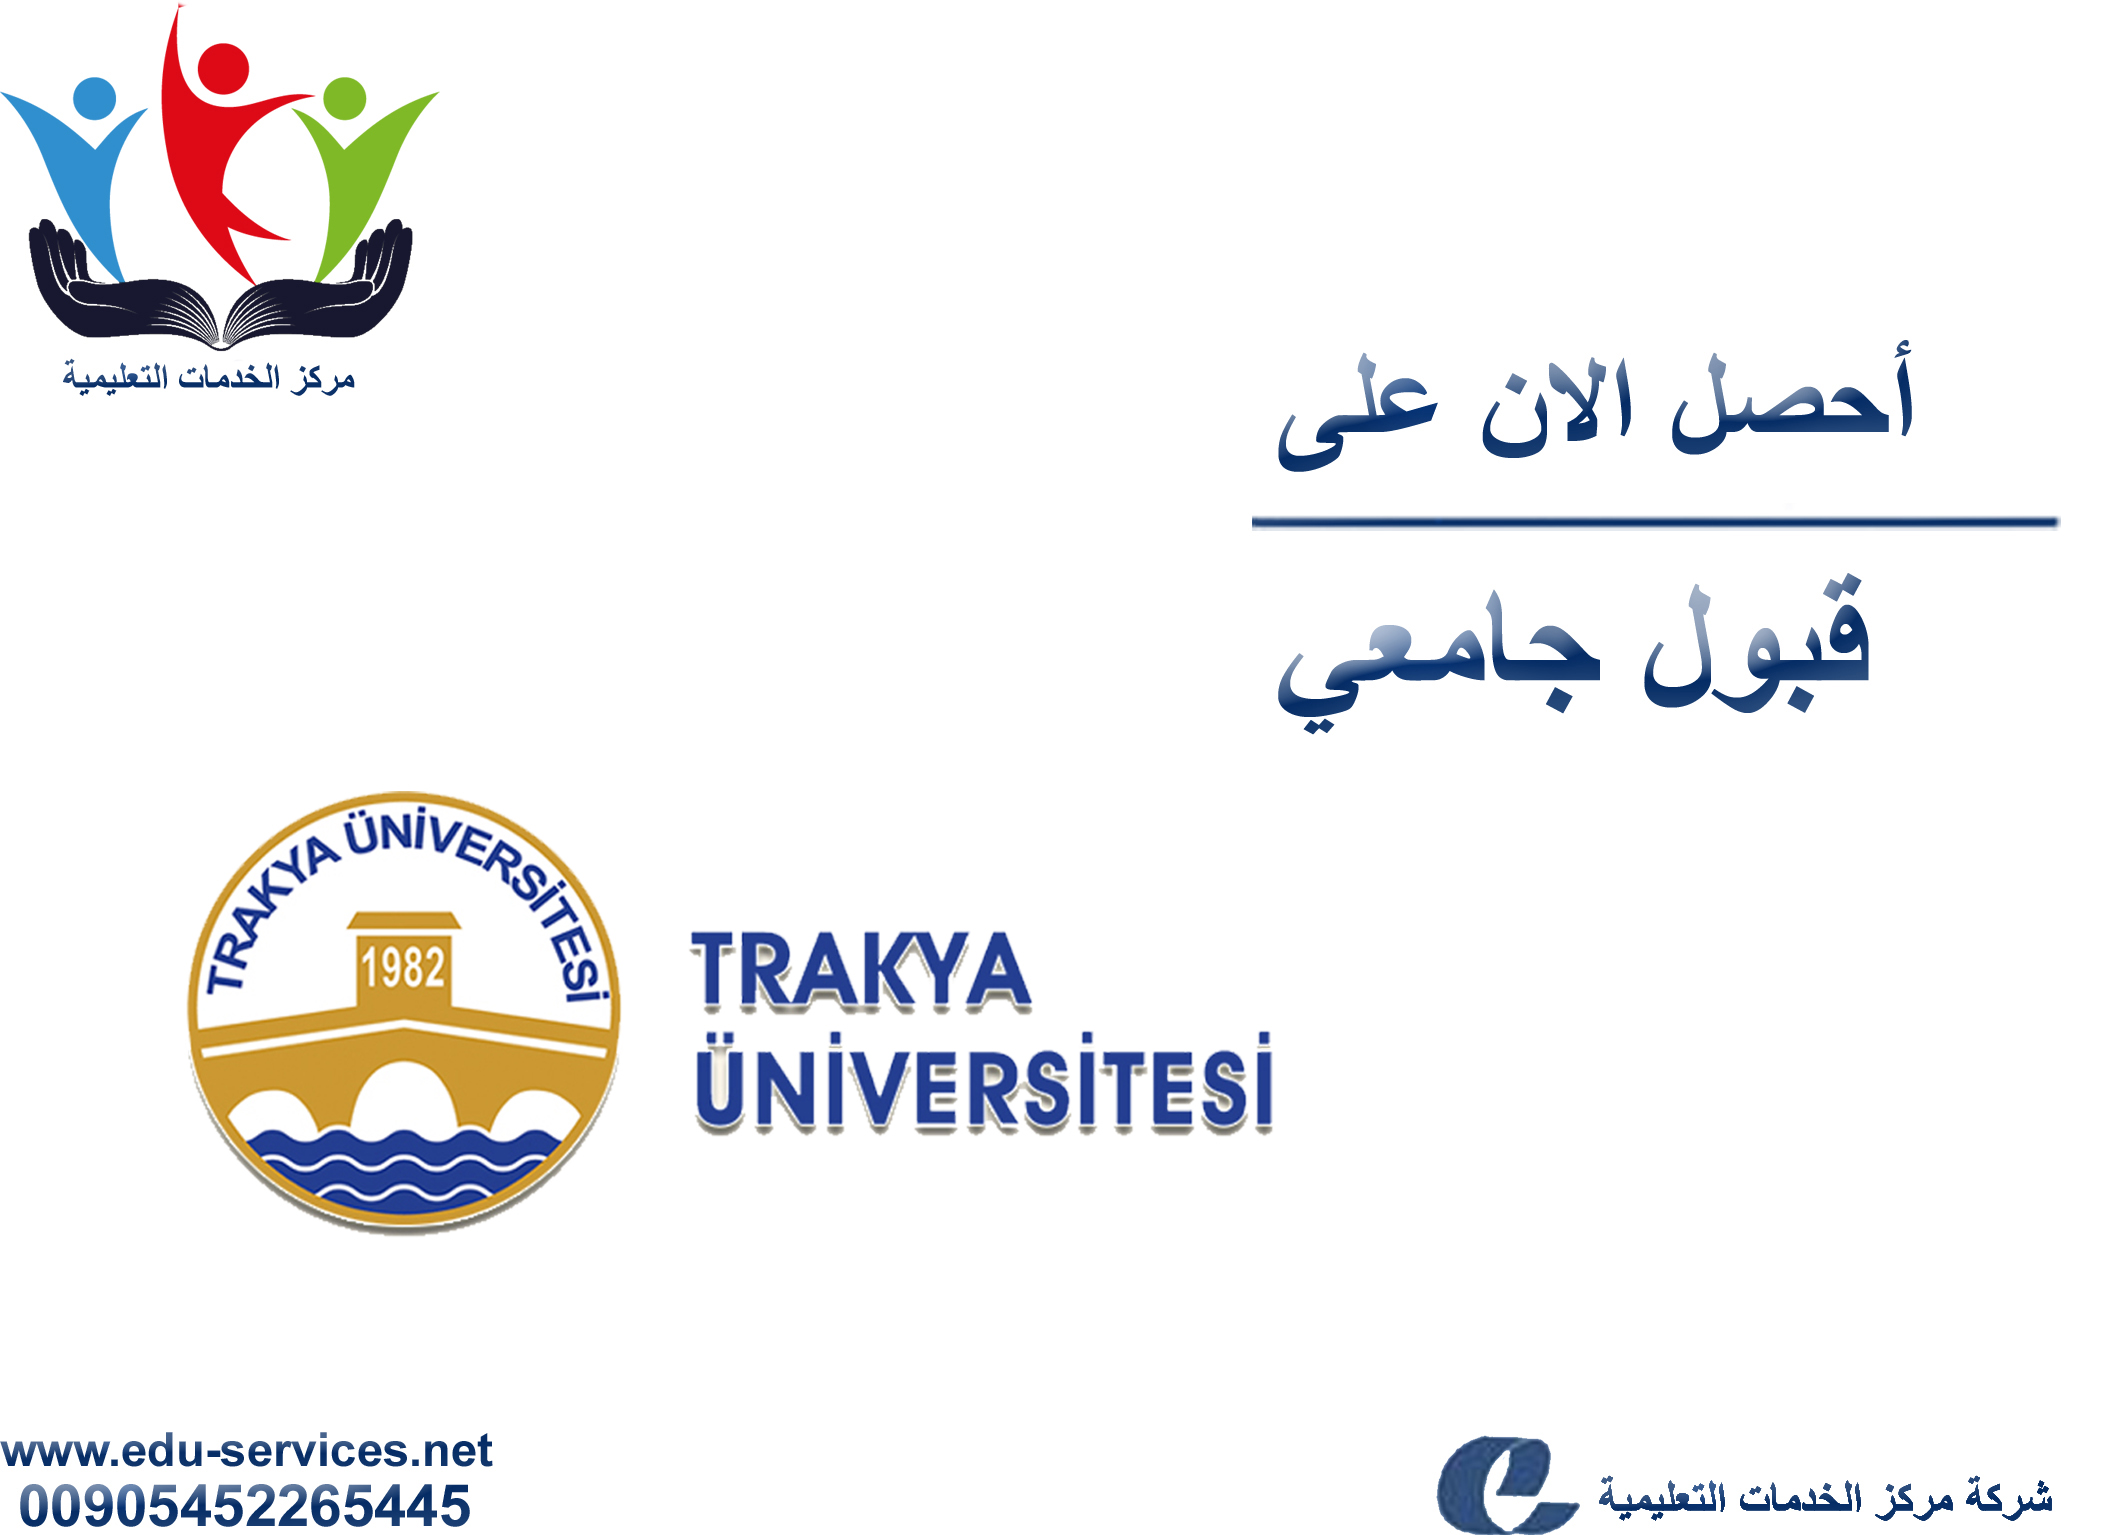 افتتاح التسجيل في جامعة تراكيا للعام 2019-2020